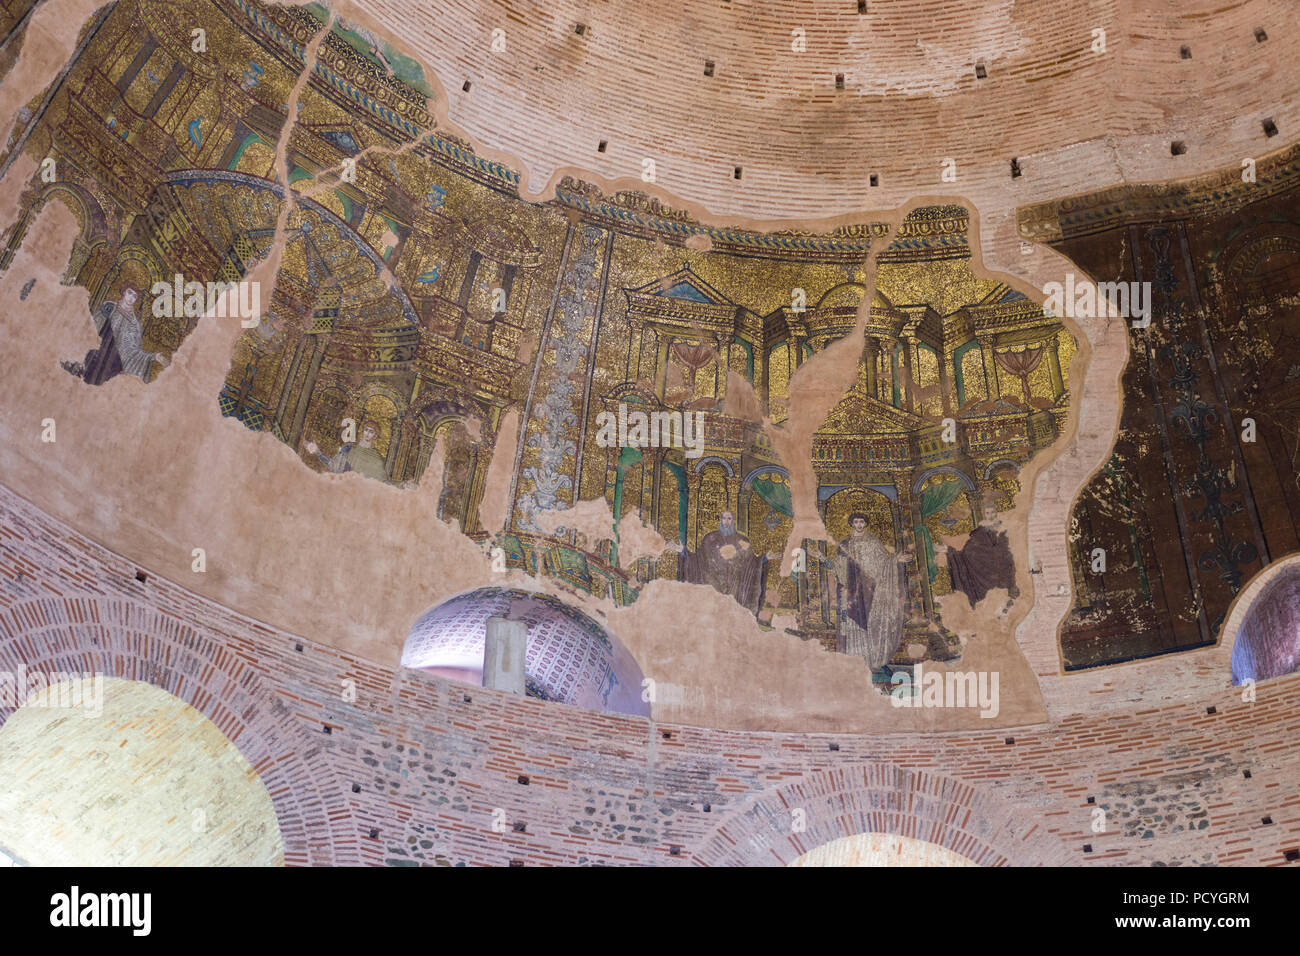 Magnifiques mosaïques décorent les murs et plafond de la Rotonde de galère, une destination touristique populaire dans la ville de Thessalonique, Grèce Banque D'Images